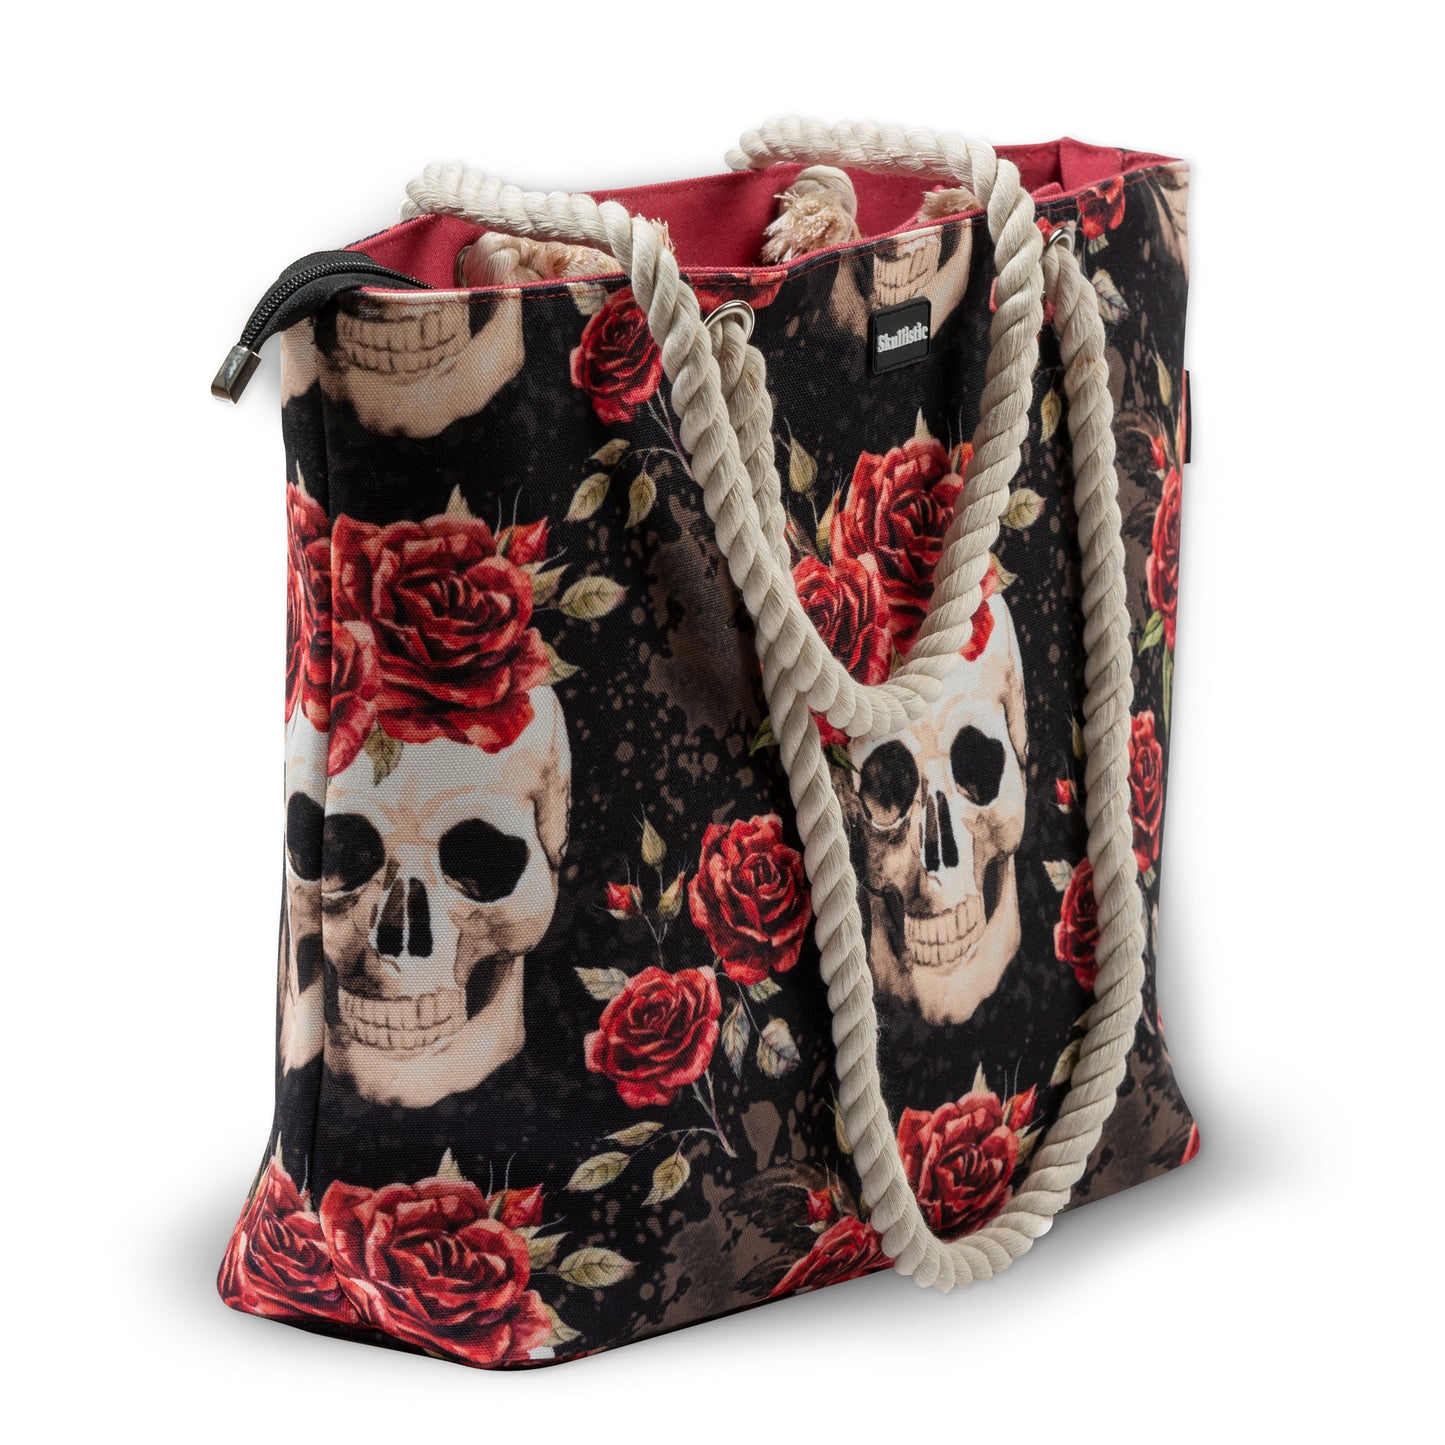 Vintage Flower cool Skull Shoulder Beach Bag Red